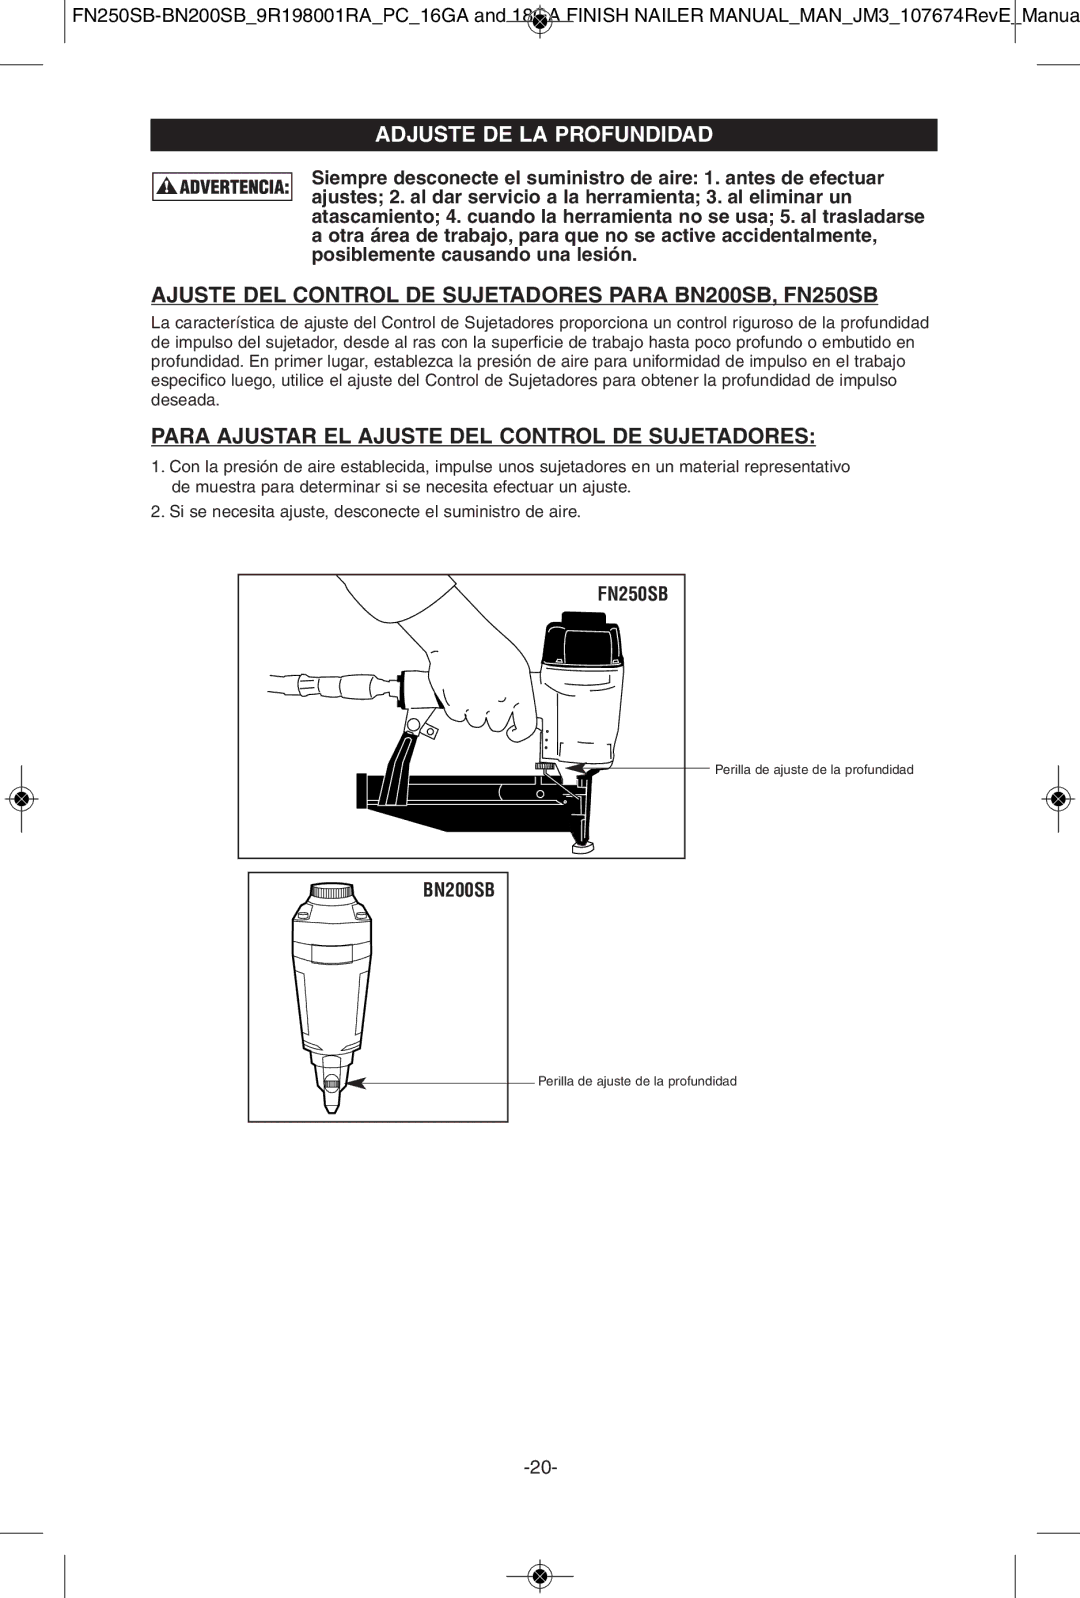 Porter-Cable instruction manual Adjuste DE LA Profundidad, Ajuste DEL Control DE Sujetadores Para BN200SB, FN250SB 